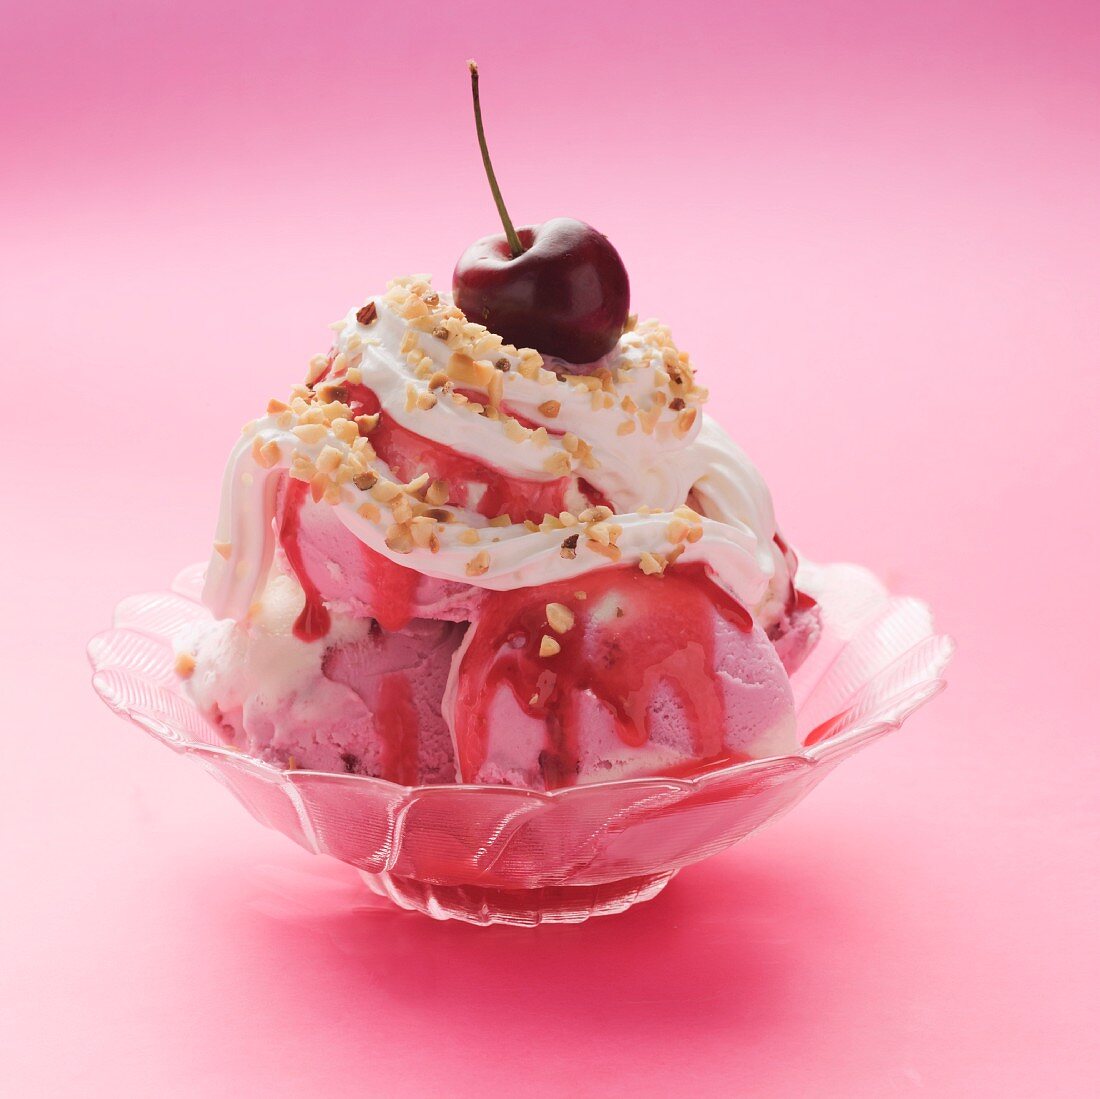 Himbeer-Vanille-Eiskugeln mit Sahne & Himbeersauce